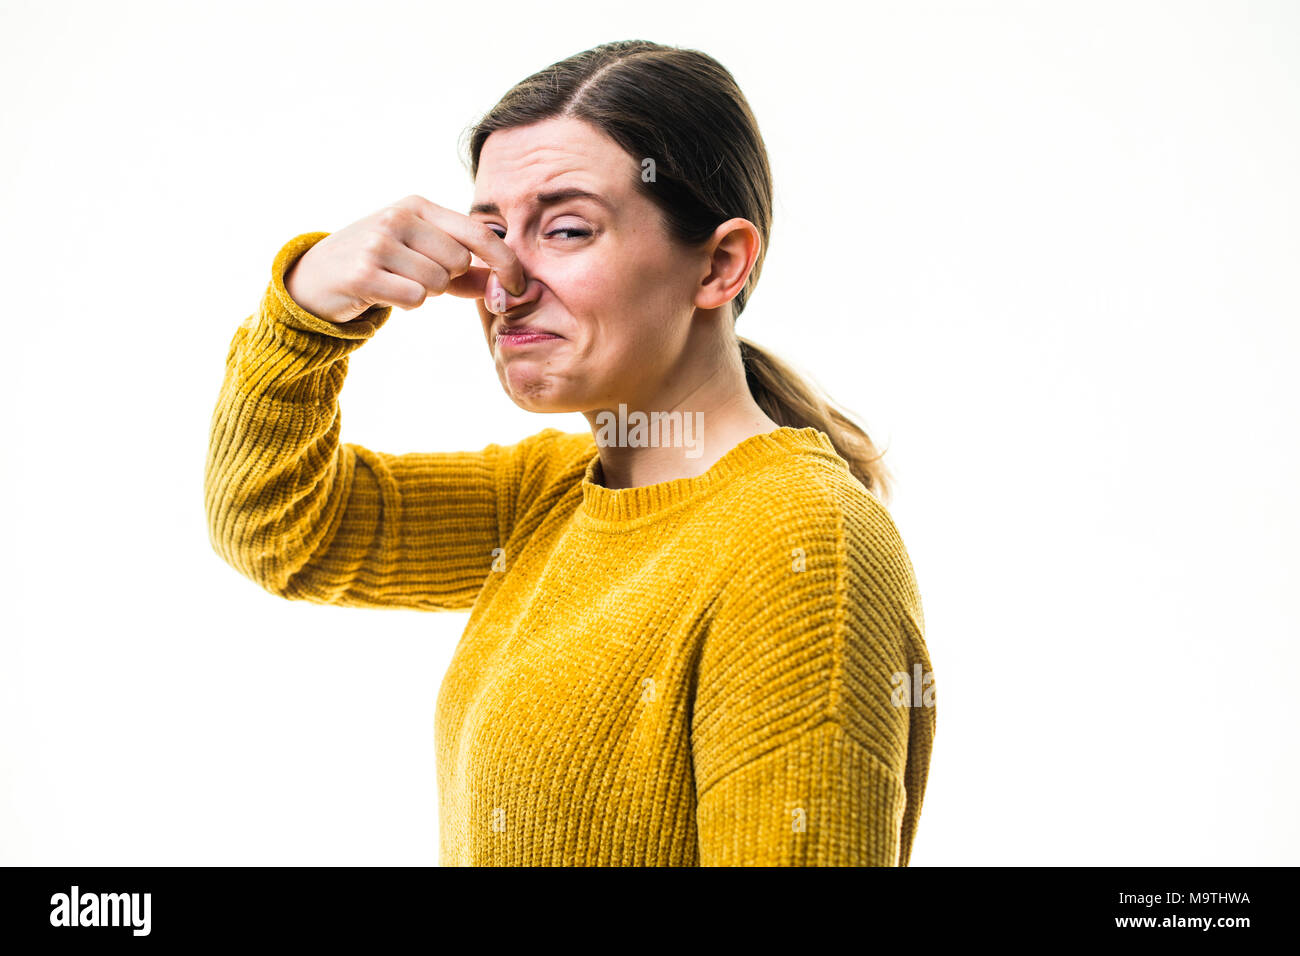 Eine junge Kaukasier Frau Mädchen mit einem gelben Pullover Pullover, Kneifen oder Ihre Nase heraus halten, zu einer schrecklichen übel riechenden Stinkigen schädliche, Umwelt, gegen einen weißen Hintergrund, Großbritannien block Stockfoto